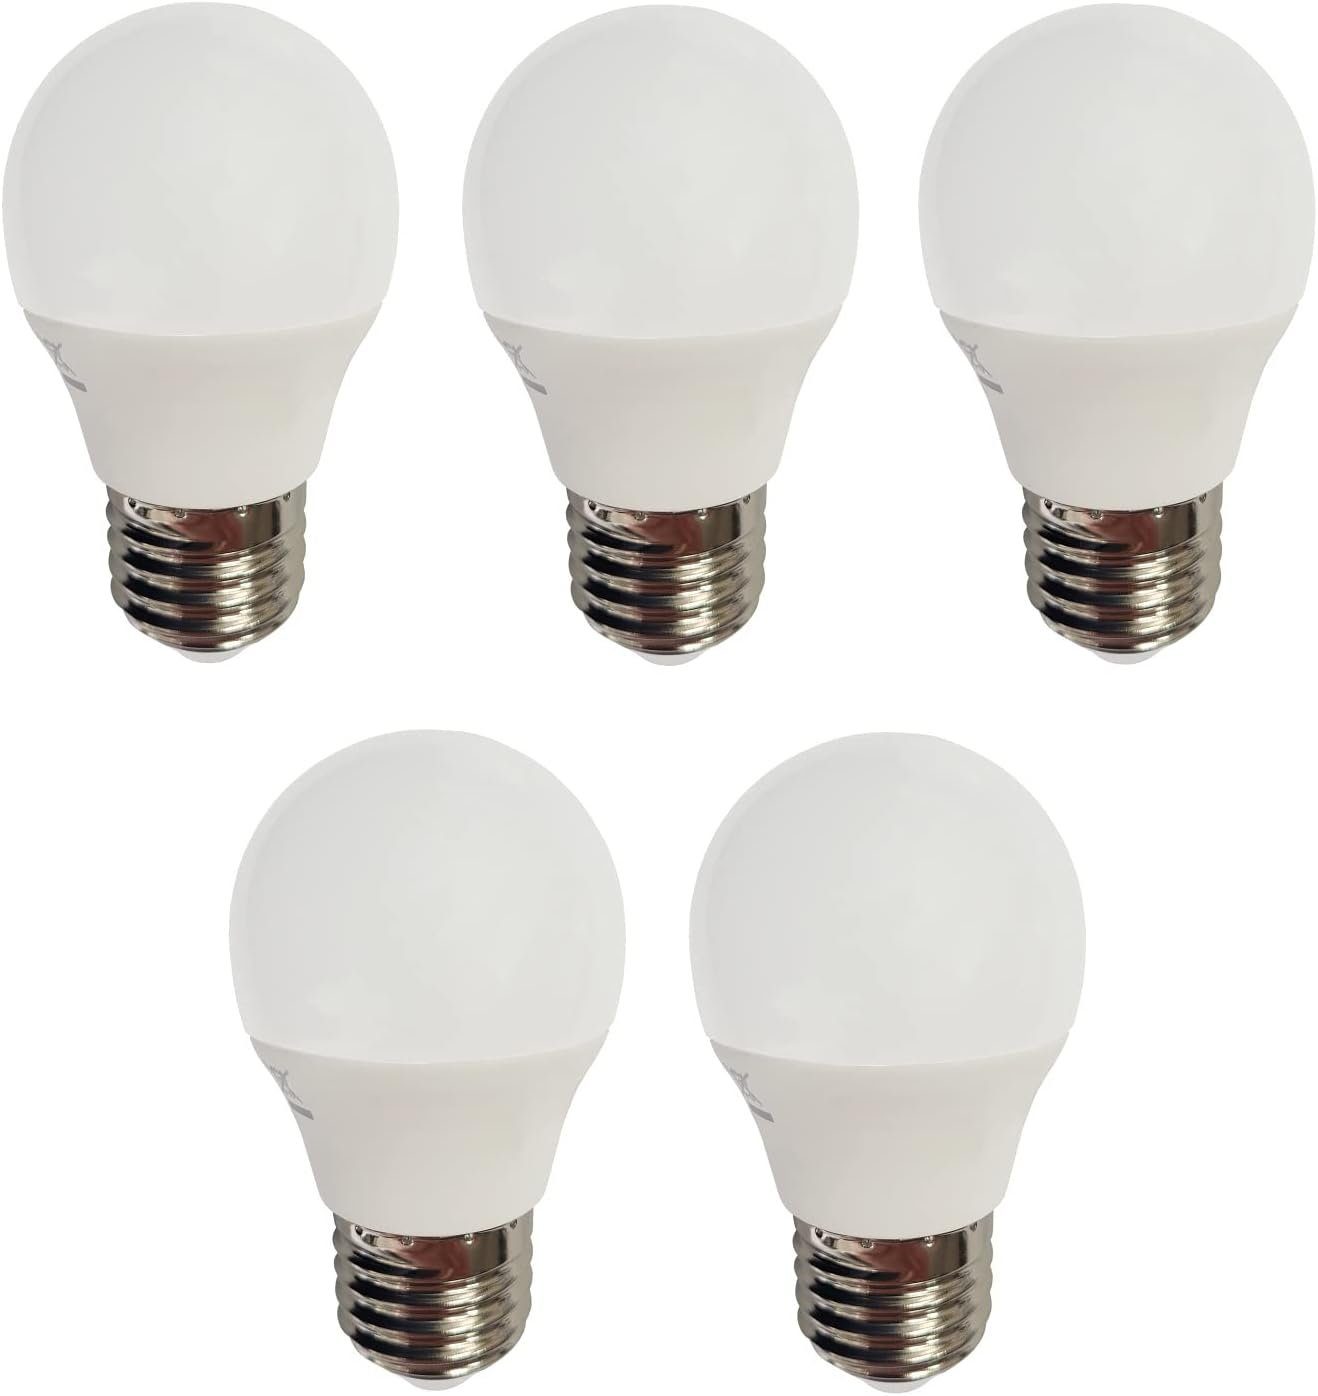 x LED LED-Leuchtmittel E27, 5 warmweiß 4W 320lm 3000K, Leuchtmittel E27 Kugel Provance